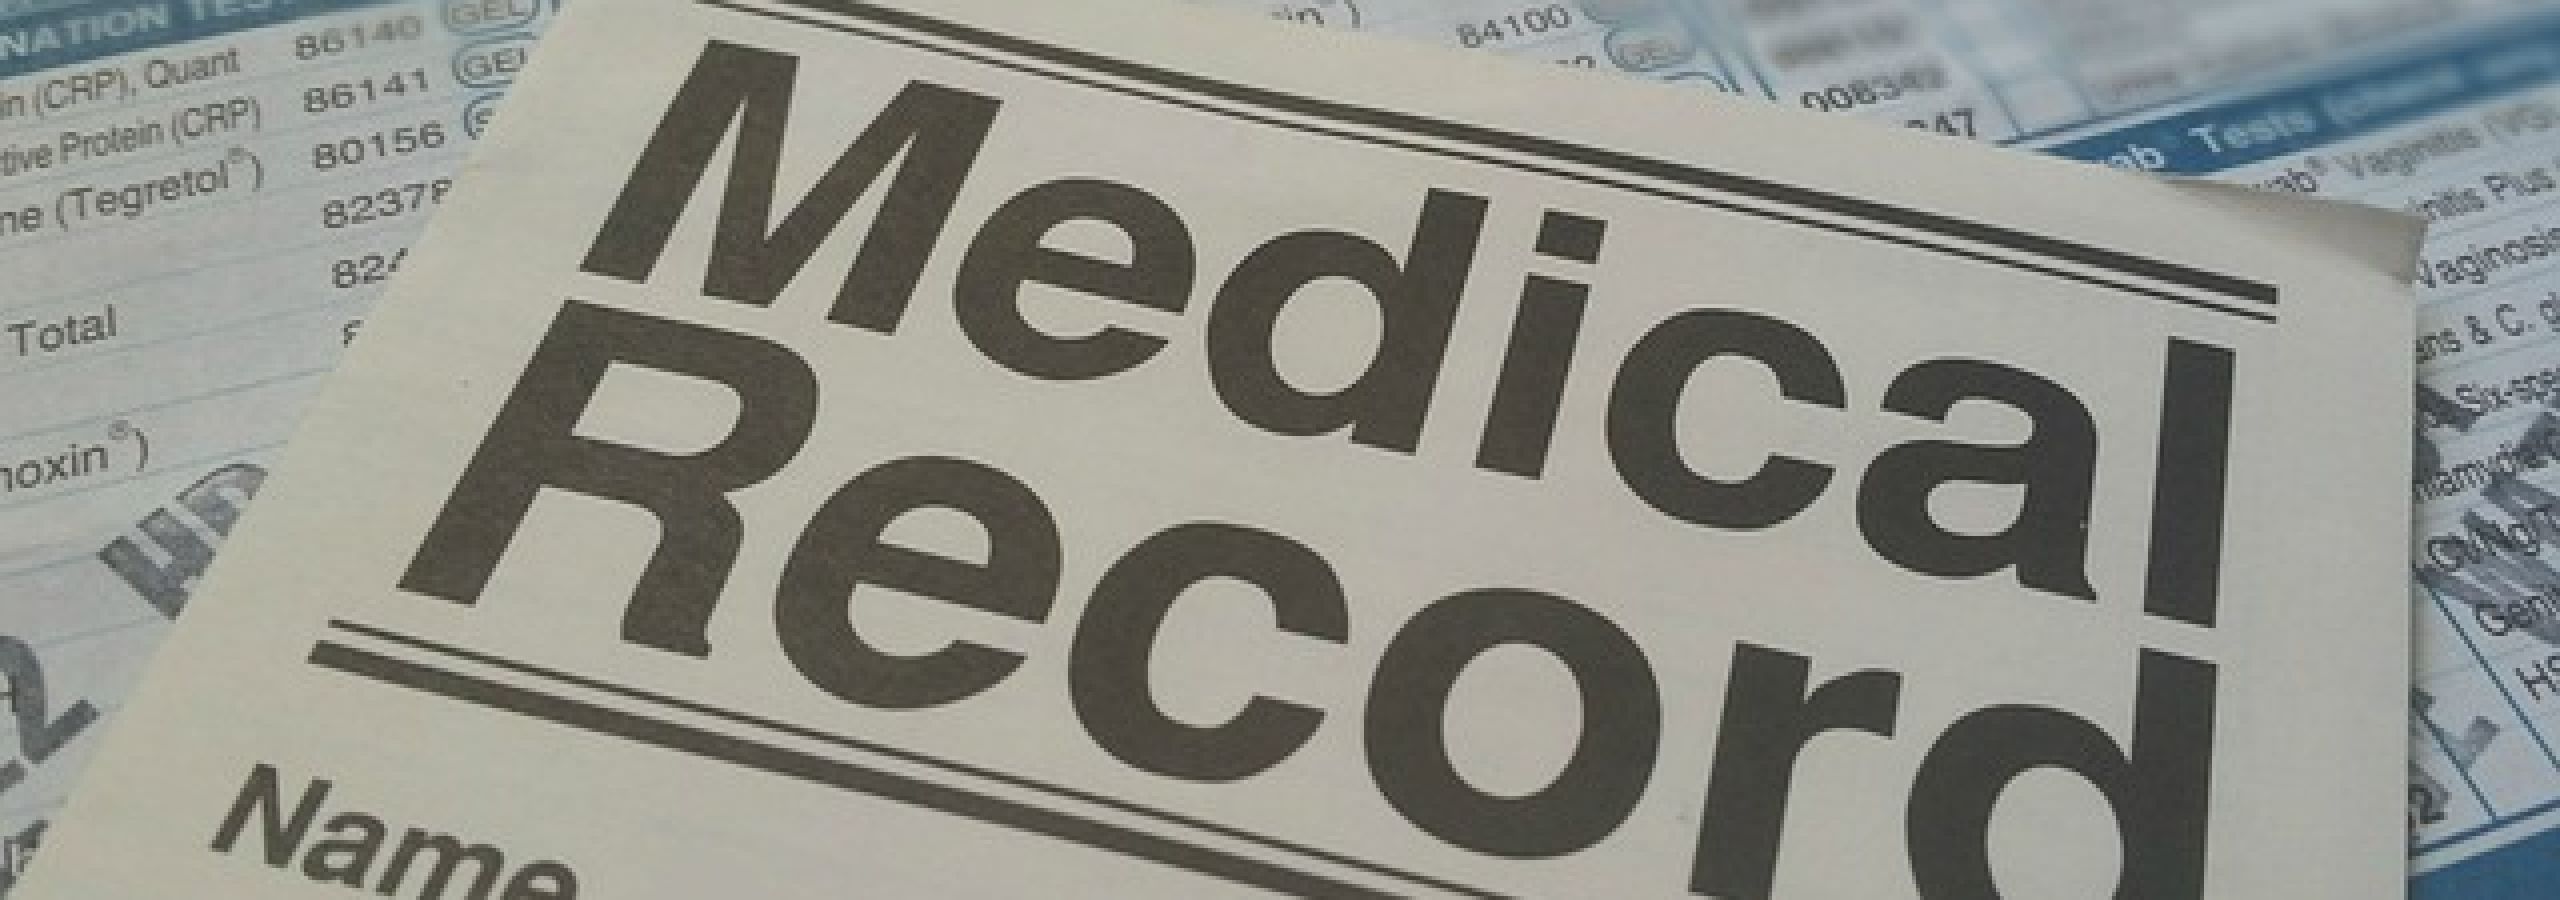 Medical Record Medical Record Medical Record Medical Record Medical Record Medical Record